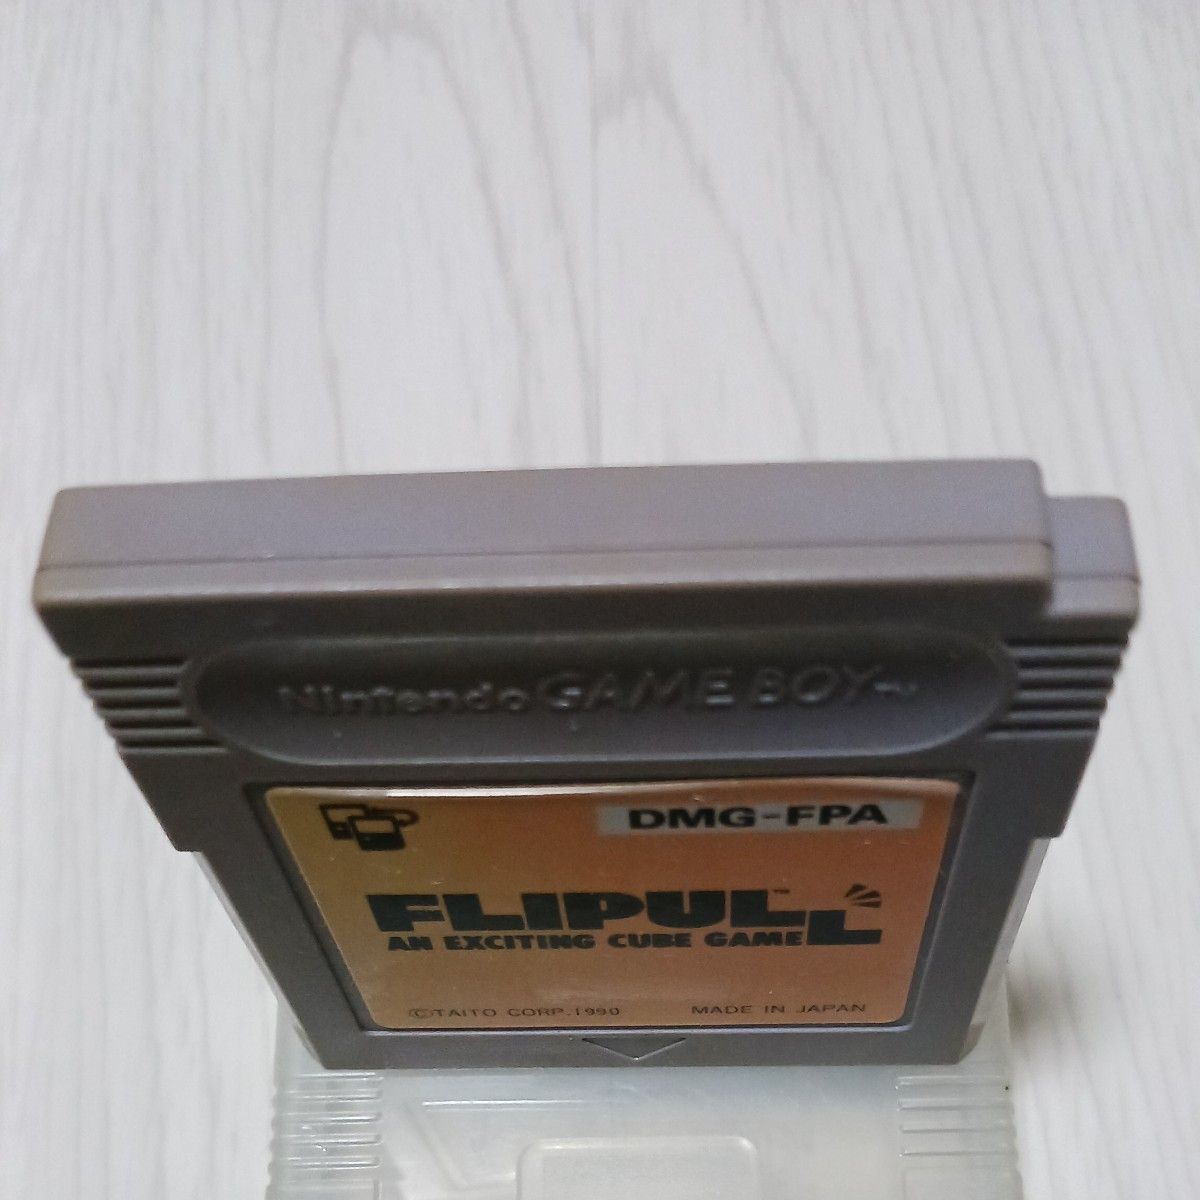 ゲームボーイ　FLIPULL　中古　動作確認済み　ケース有り　お宝商品